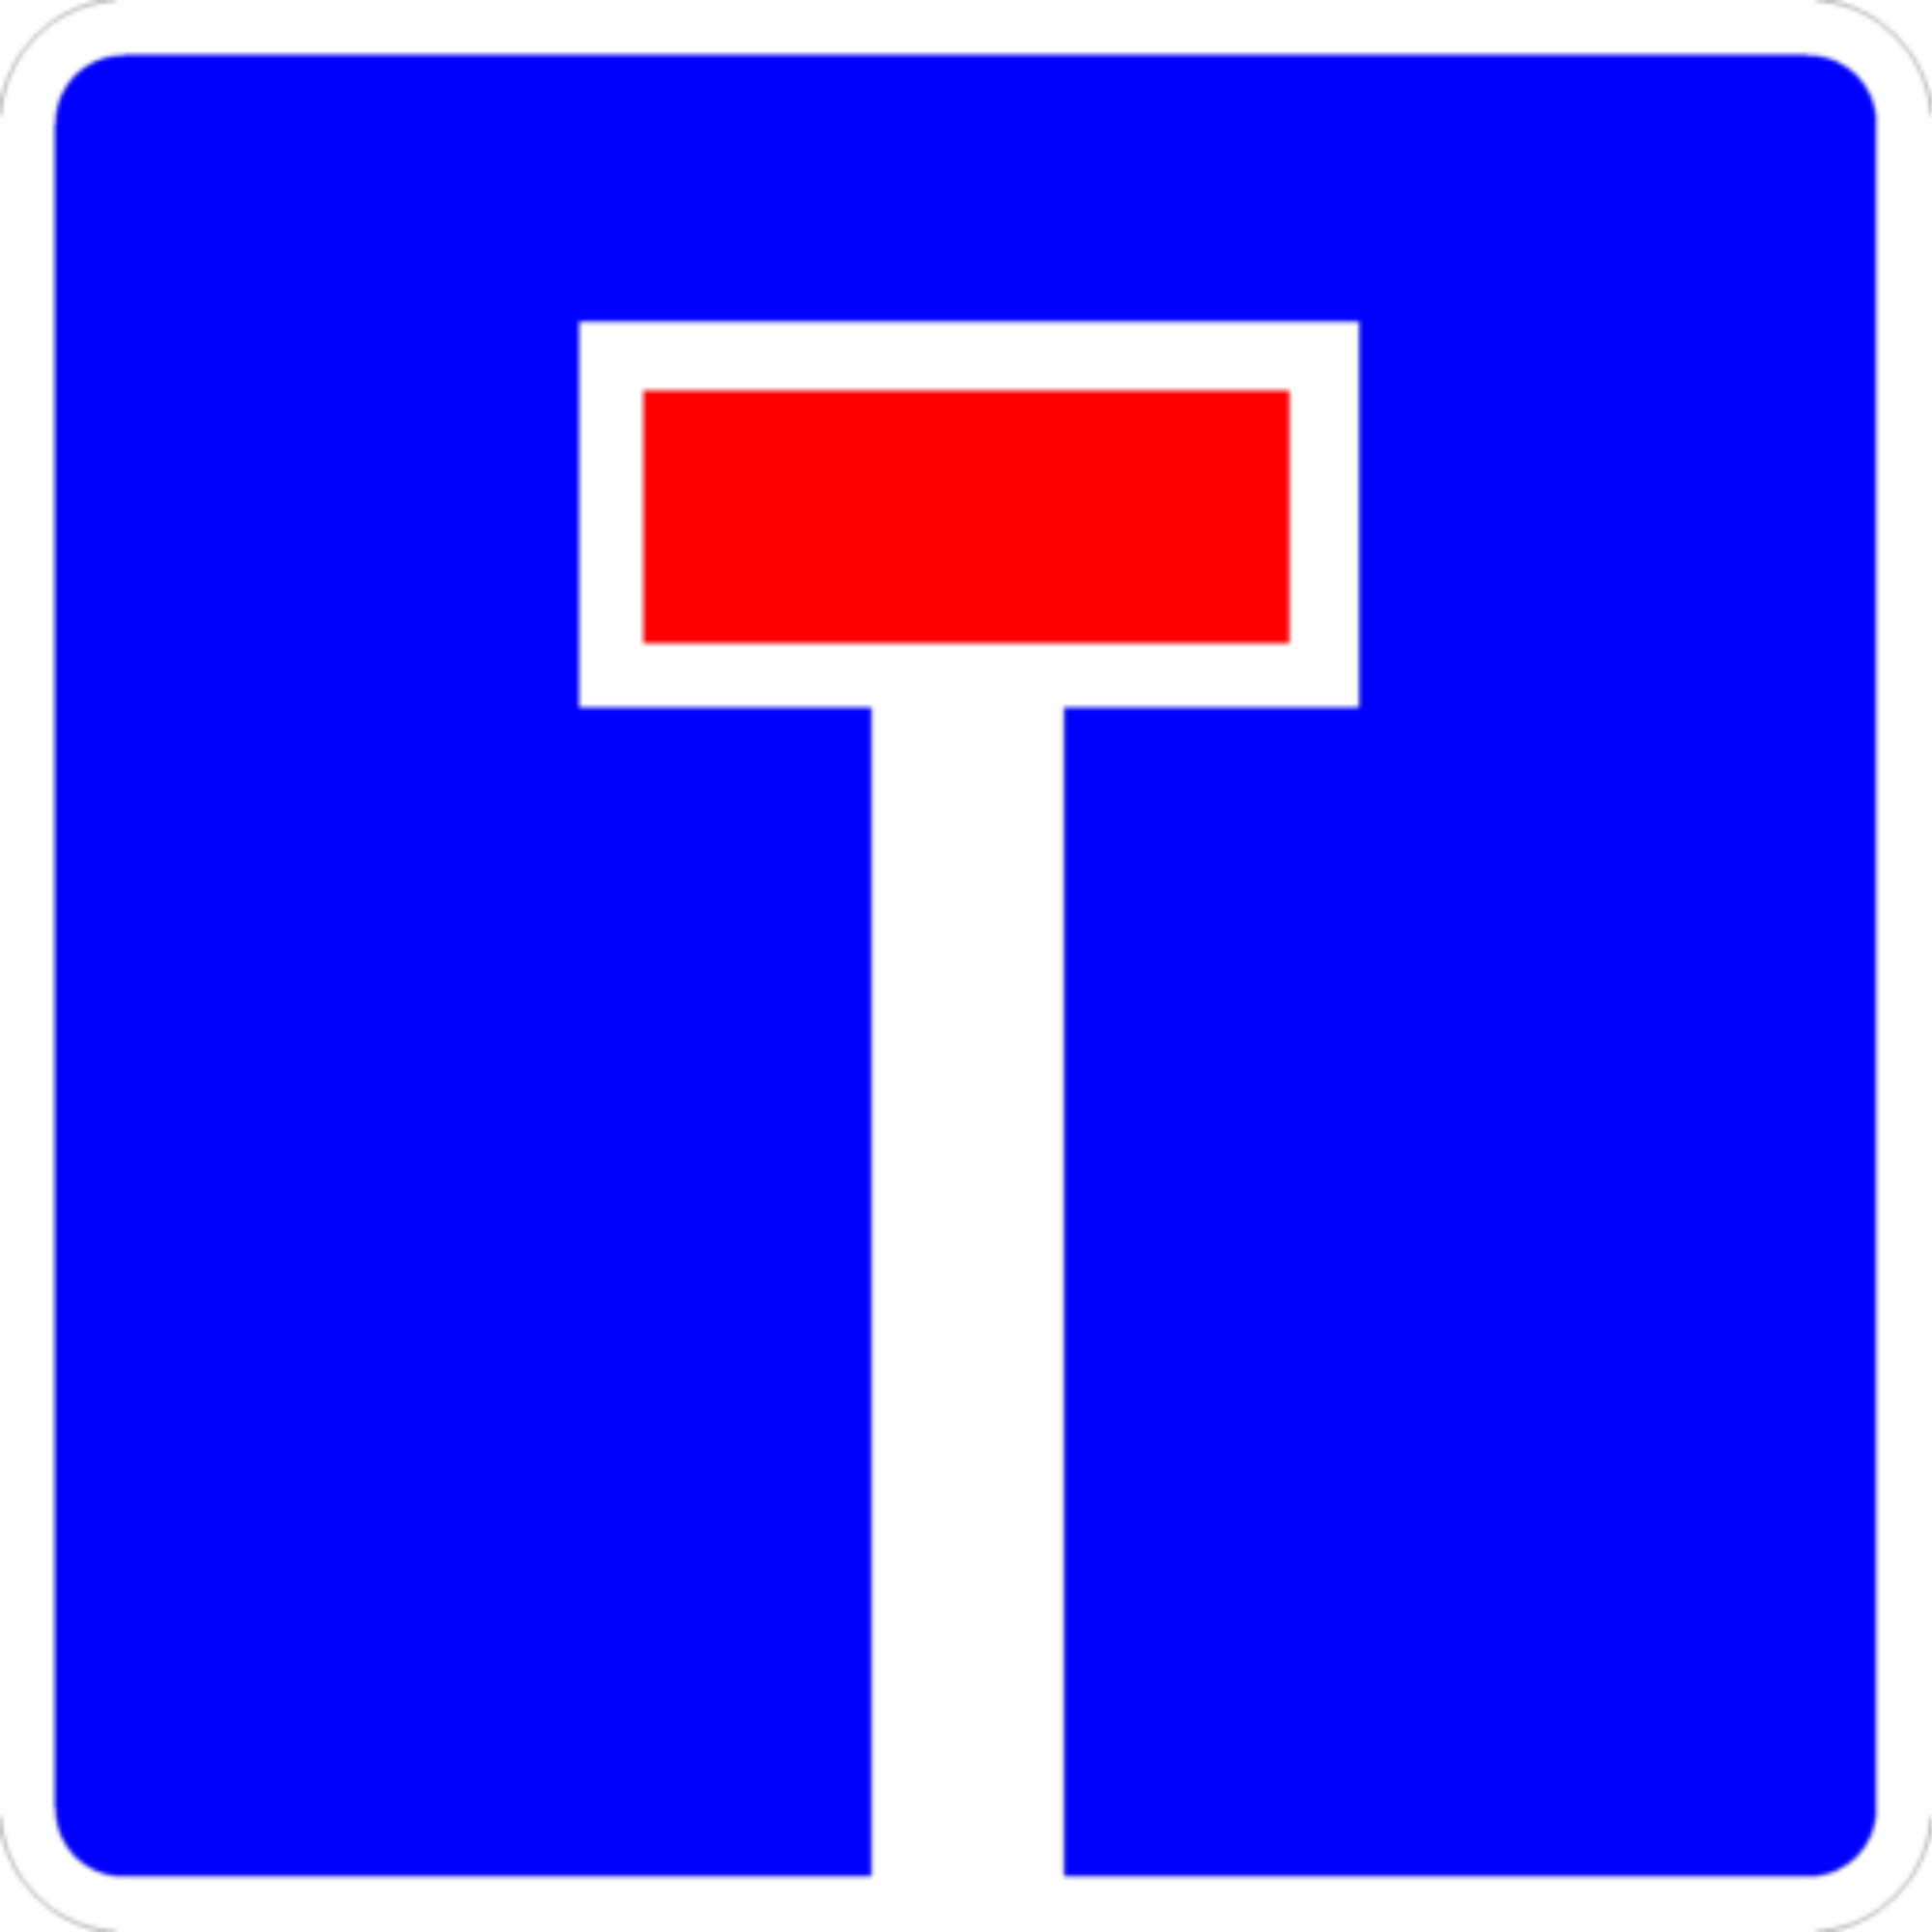 Дорожный знак 6.8.1 "Тупик", типоразмер 3 (700х700) световозвращающая пленка класс Iа (квадрат)